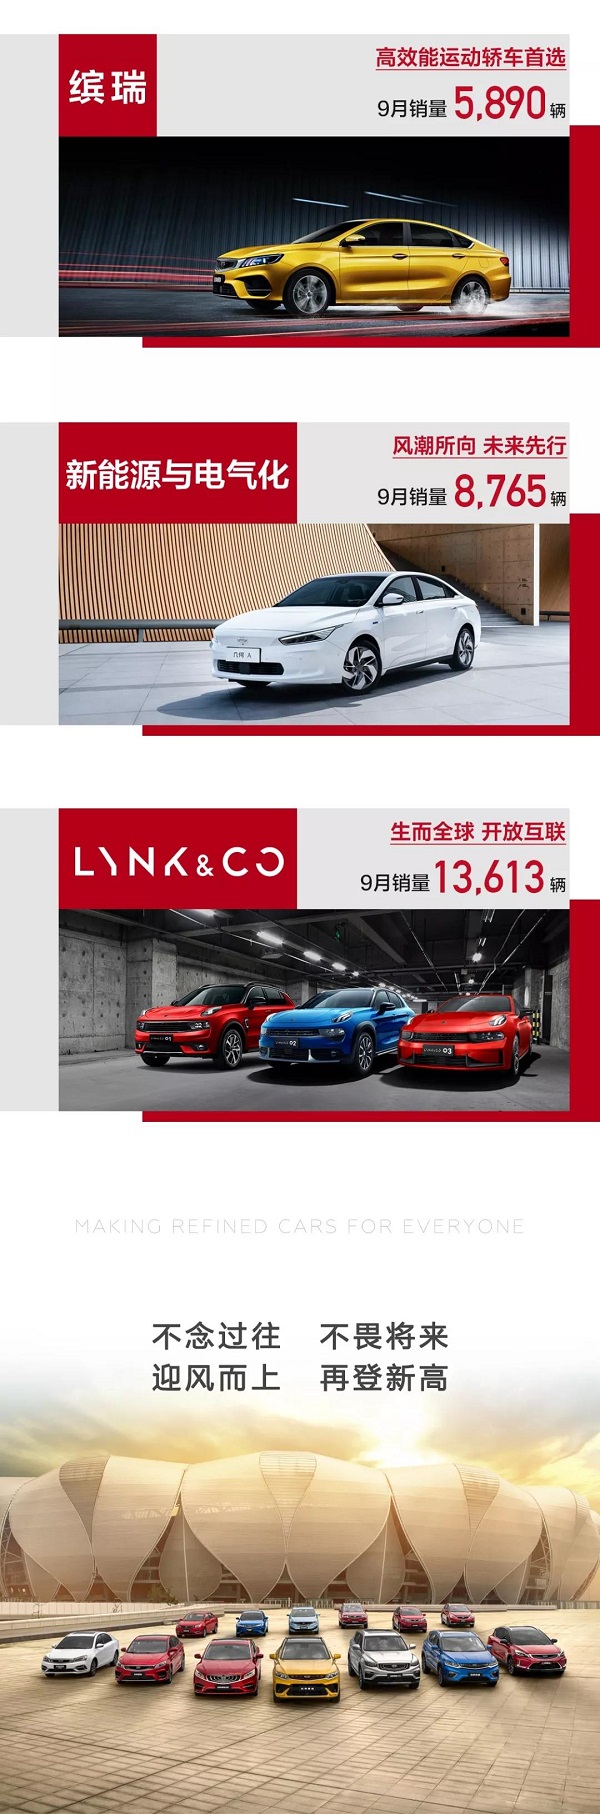 吉利汽车9月销量113,832辆！环比增长超12%！蝉联中国品牌销量冠军！